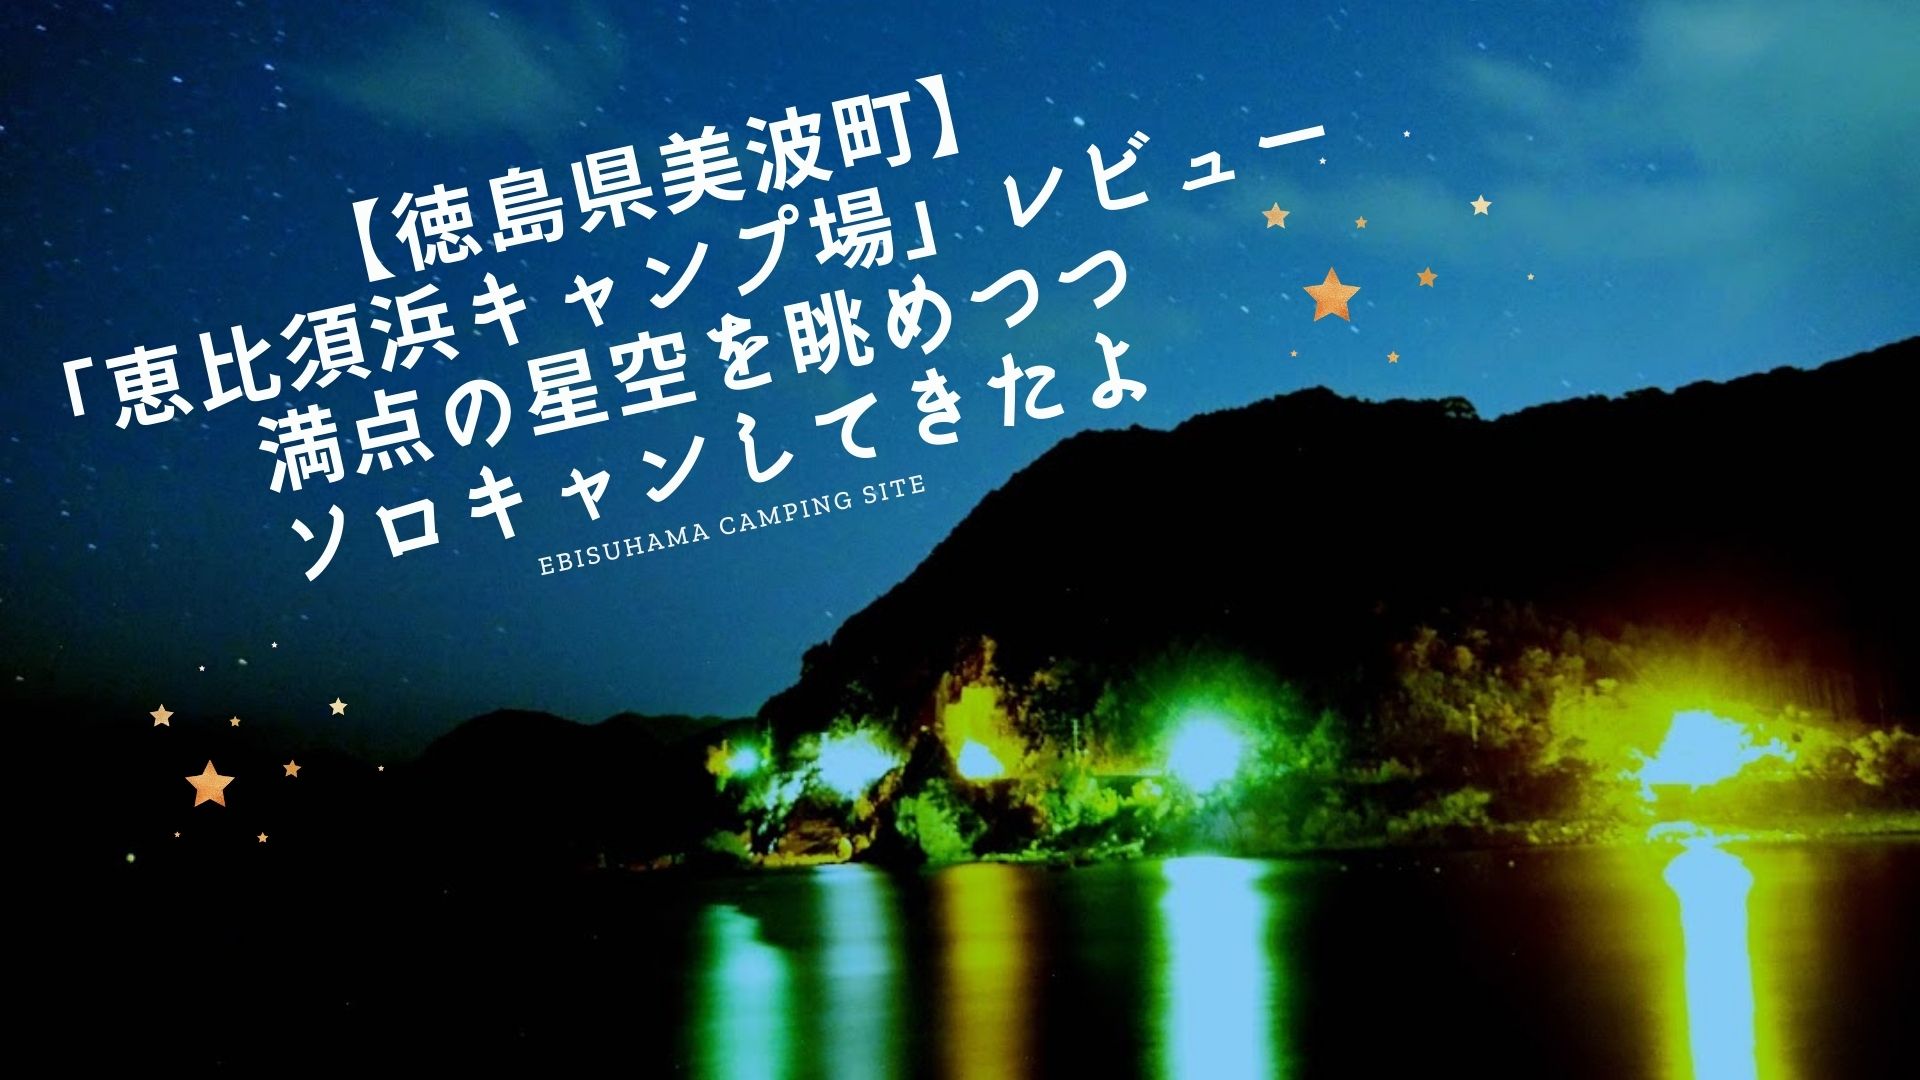 【徳島県美波町】「恵比須浜キャンプ場」レビュー・満点の星空を眺めつつソロキャンしてきたよ